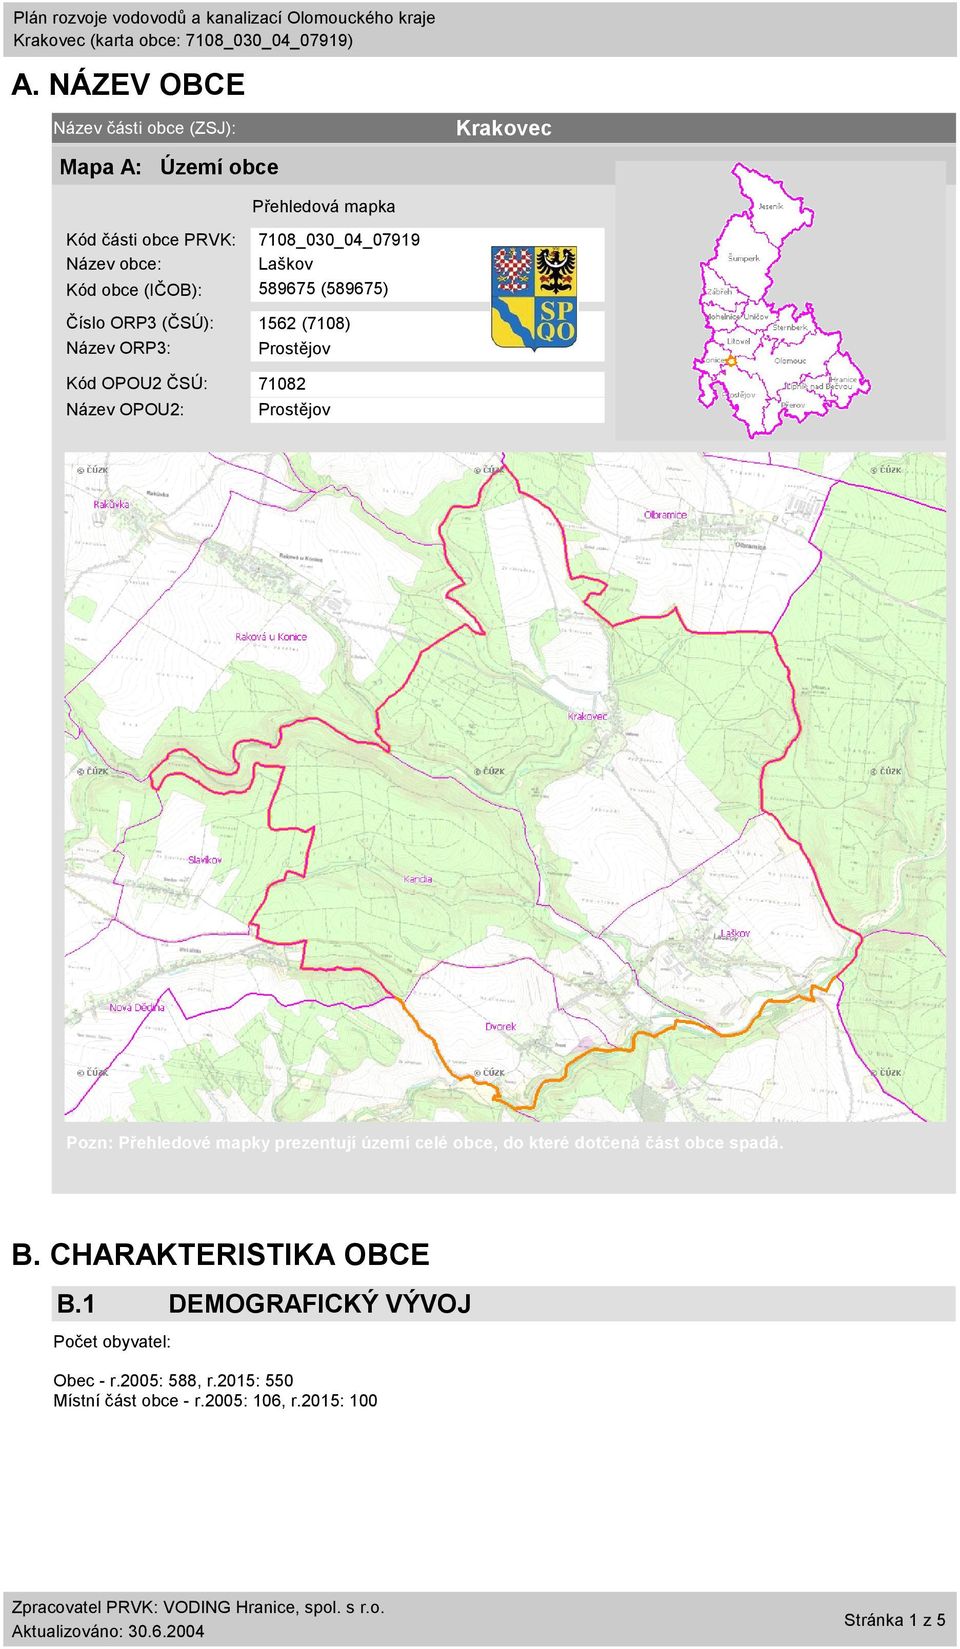 Název OPOU2: Prostějov Pozn: Přehledové mapky prezentují území celé obce, do které dotčená část obce spadá. B.